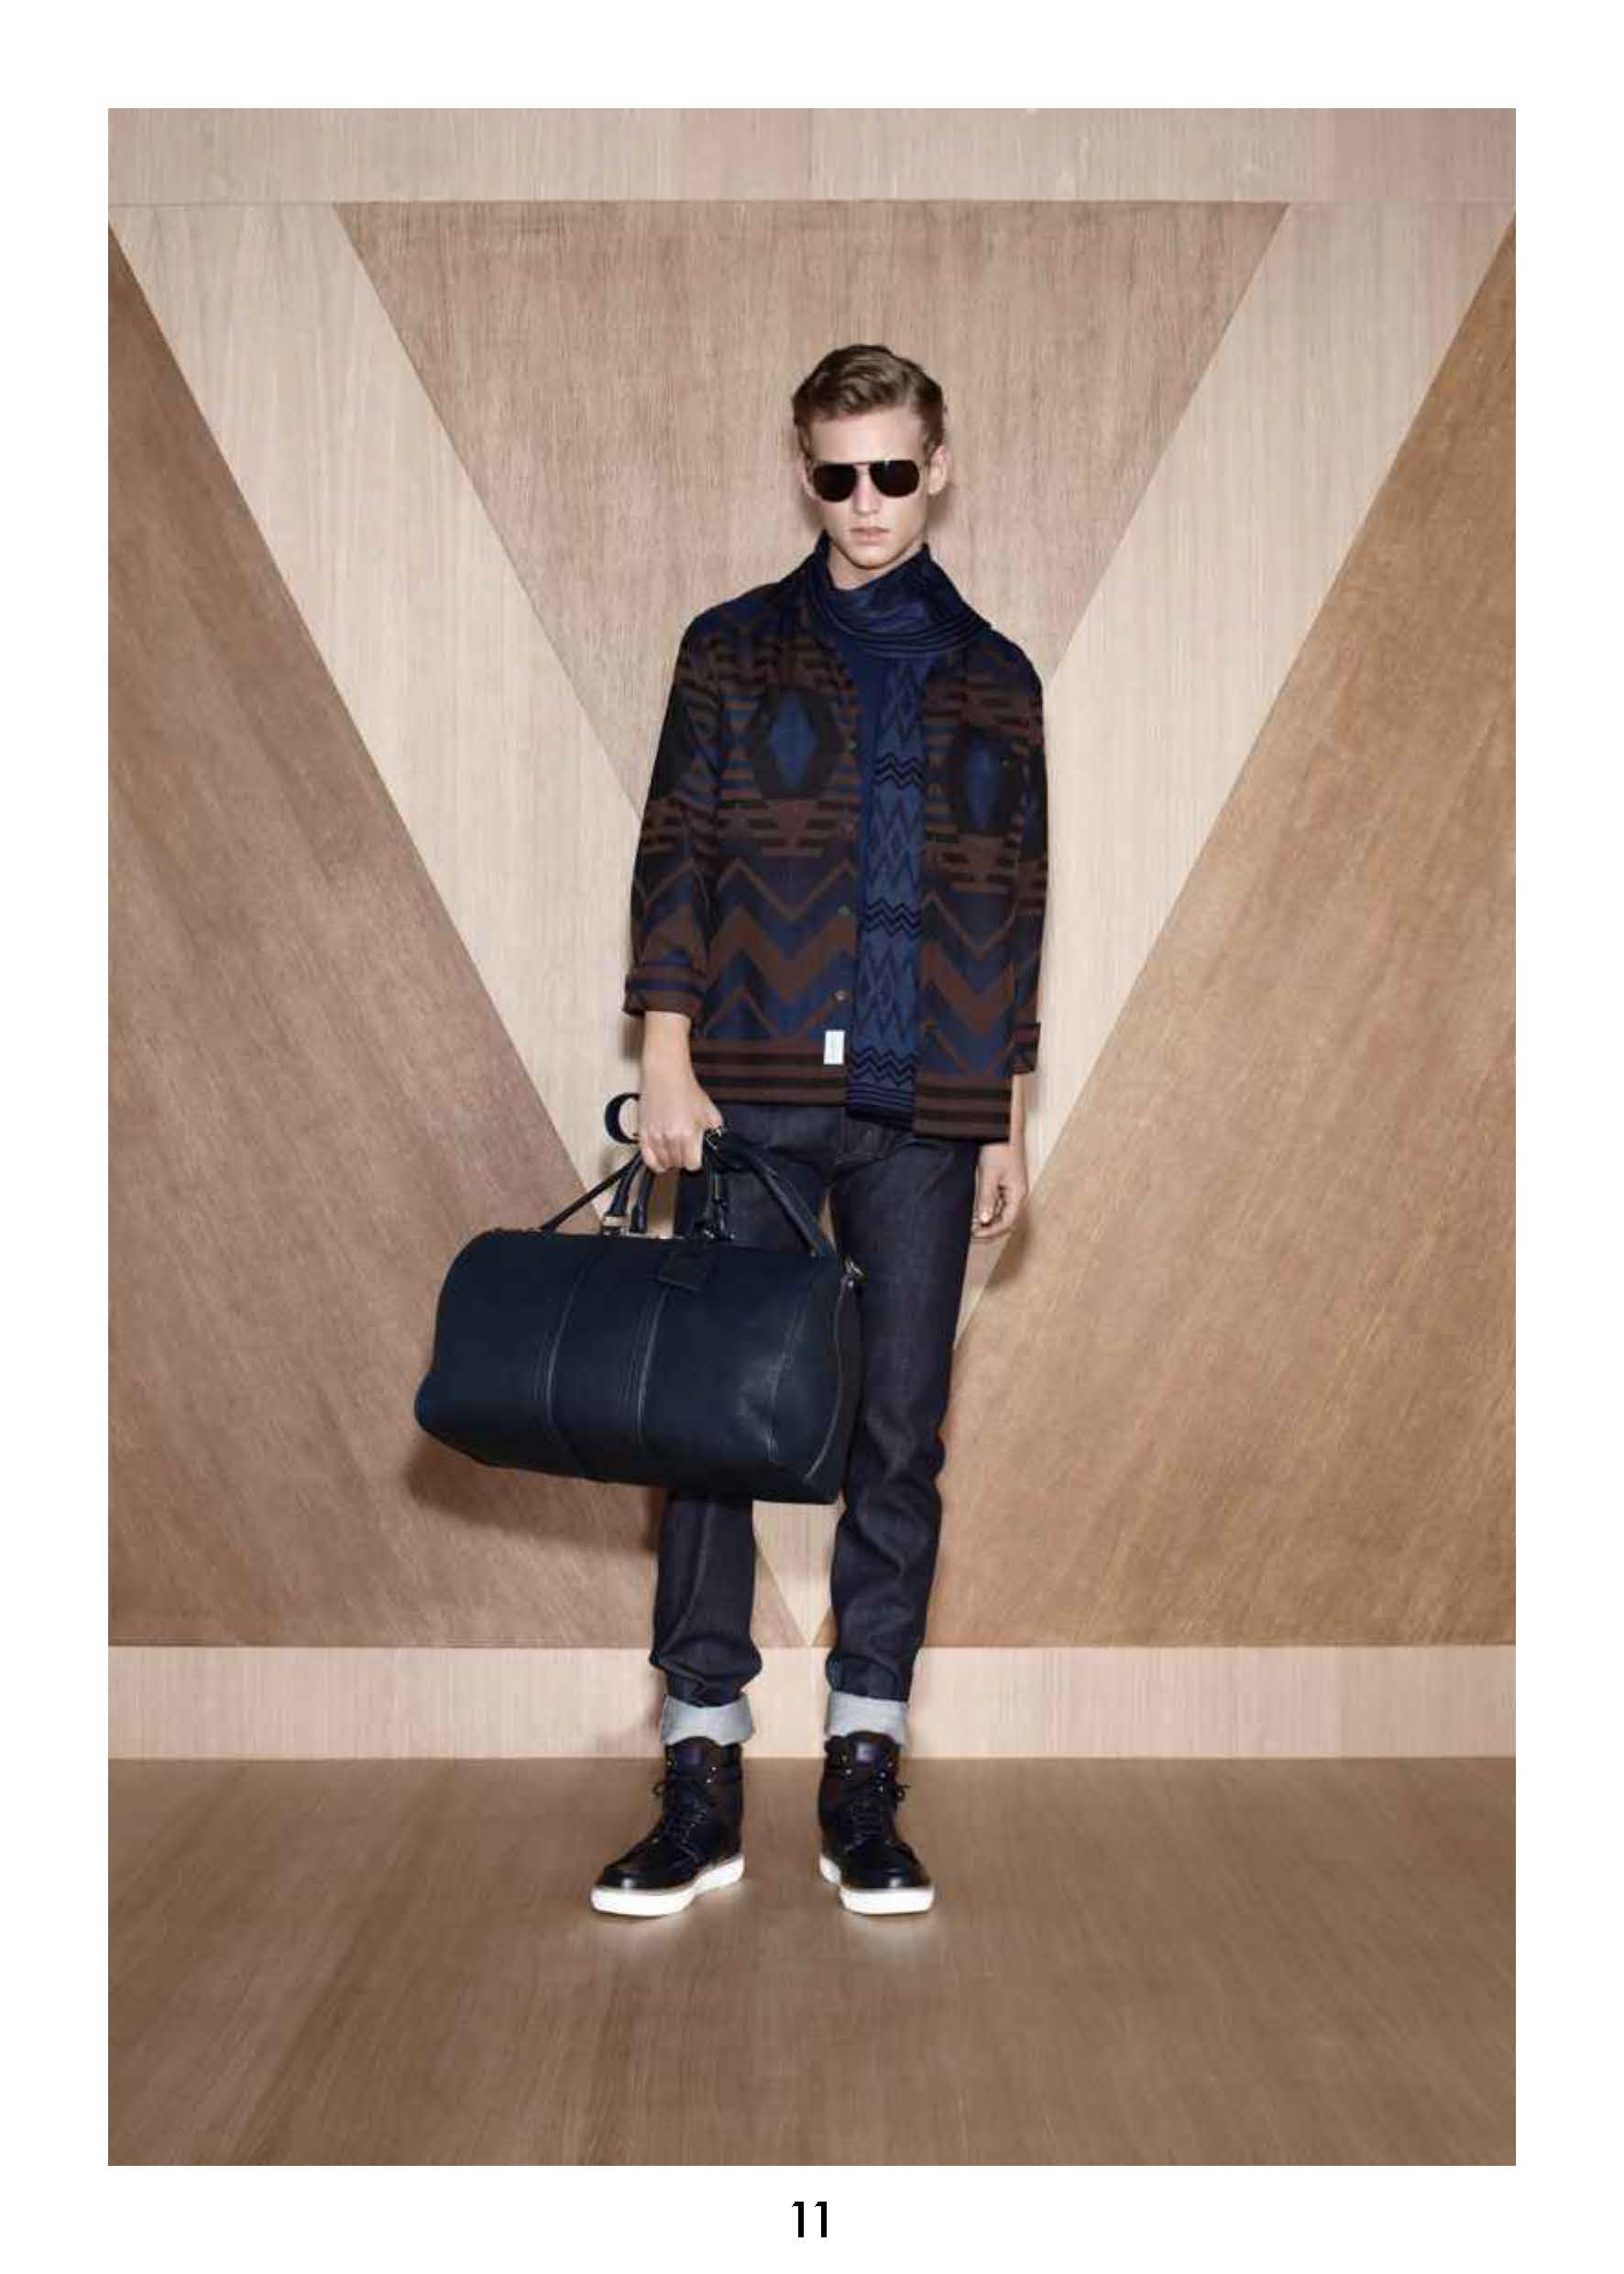 Louis Vuitton S/S 21 Menswear